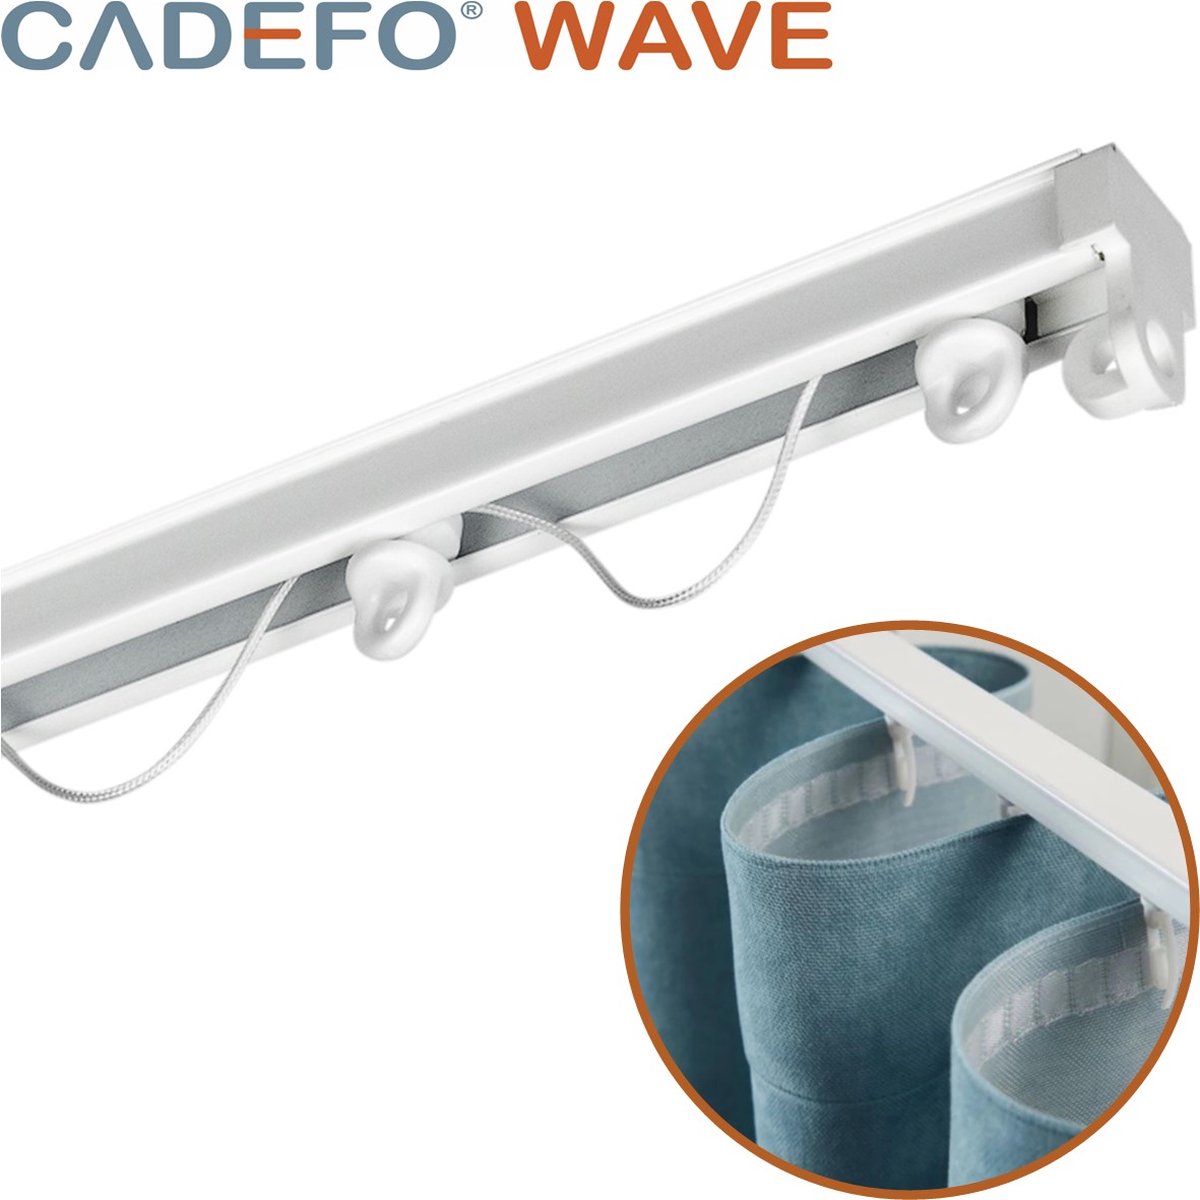 CADEFO WAVE (451 - 500 cm) Gordijnrails - Compleet op maat! - UIT 1 STUK - Leverbaar tot 6 meter - Plafondbevestiging - Lengte 483 cm